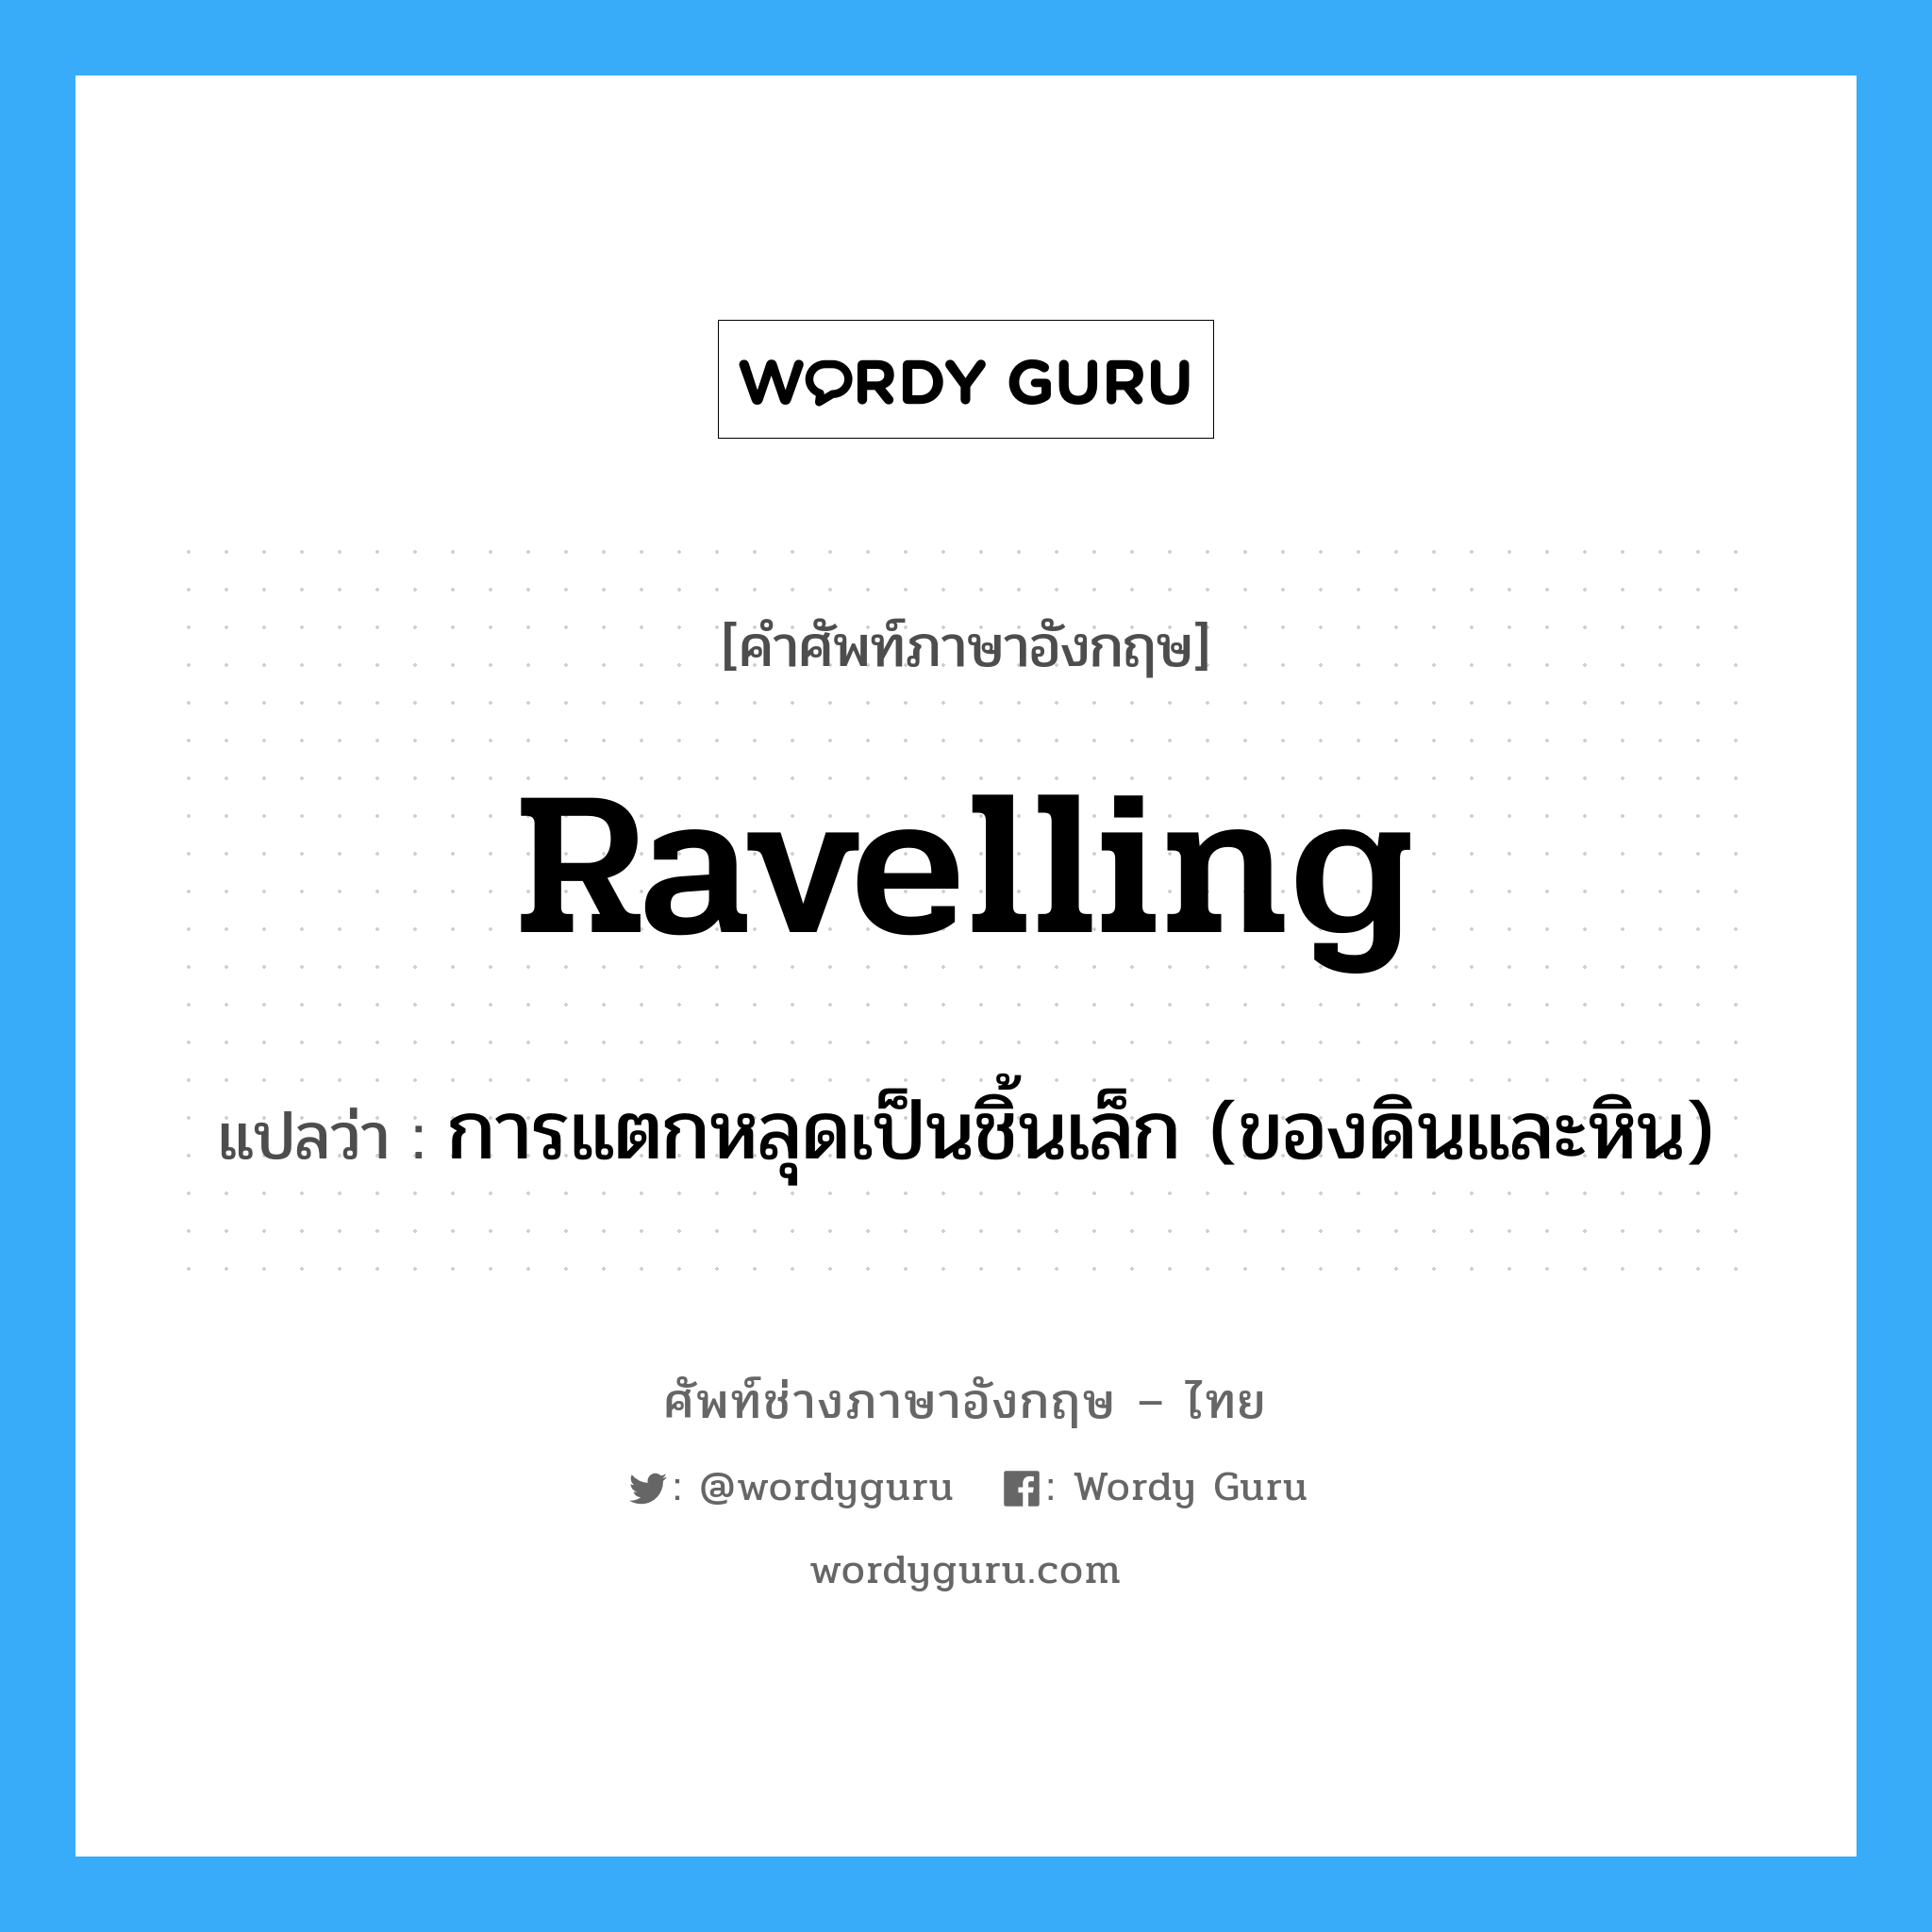 ravelling แปลว่า?, คำศัพท์ช่างภาษาอังกฤษ - ไทย ravelling คำศัพท์ภาษาอังกฤษ ravelling แปลว่า การแตกหลุดเป็นชิ้นเล็ก (ของดินและหิน)